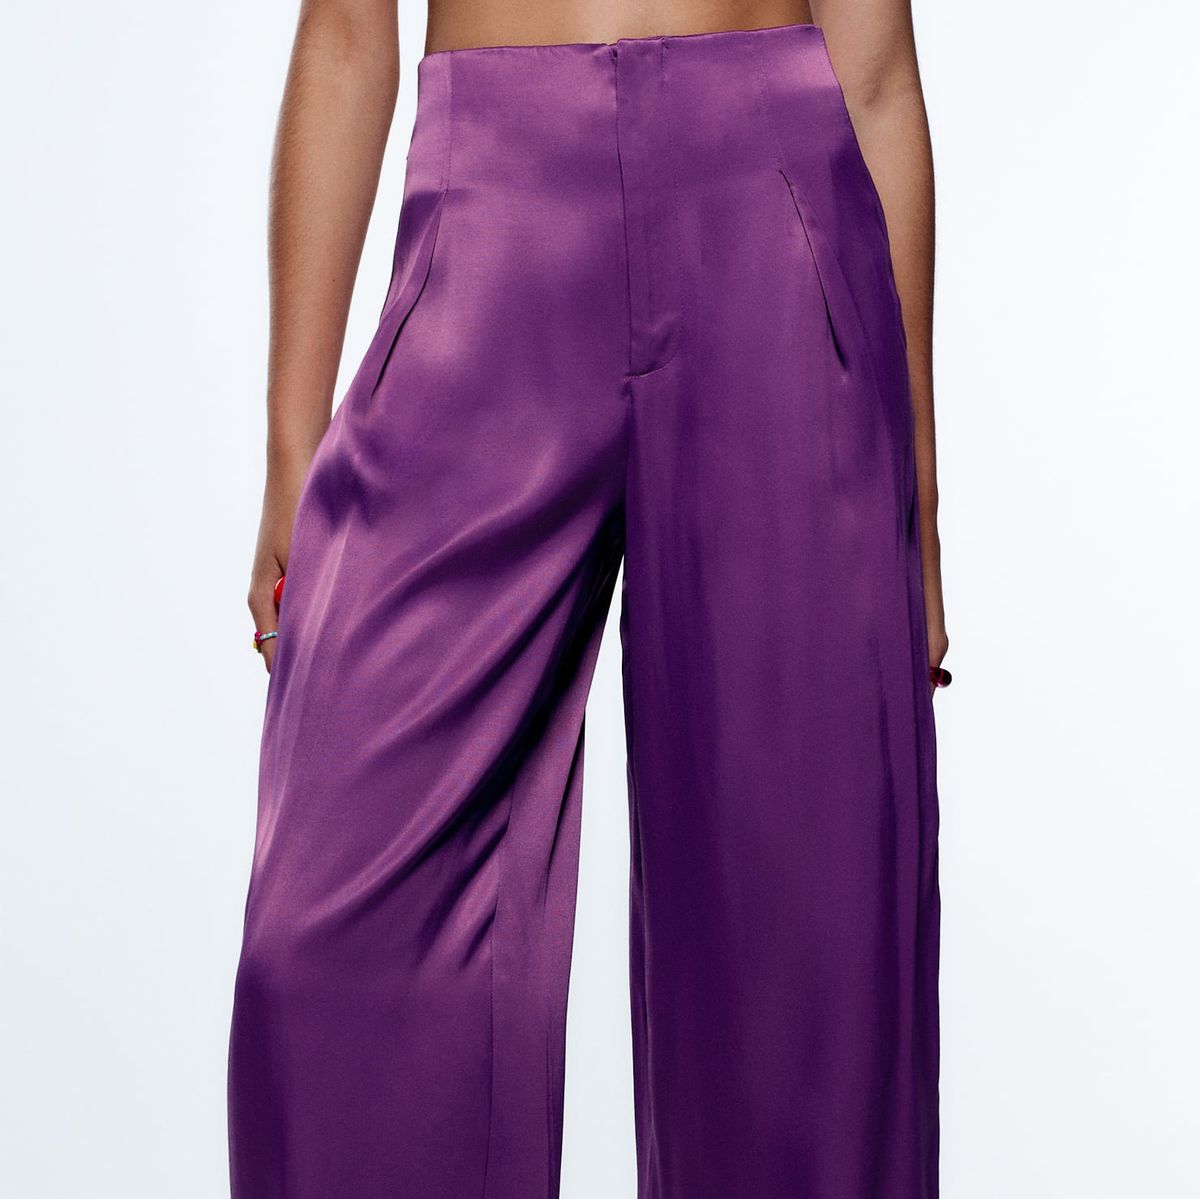 campana choque Hay una tendencia Este pantalón de vestir elástico de 29 € de Zara rejuvenece y estiliza